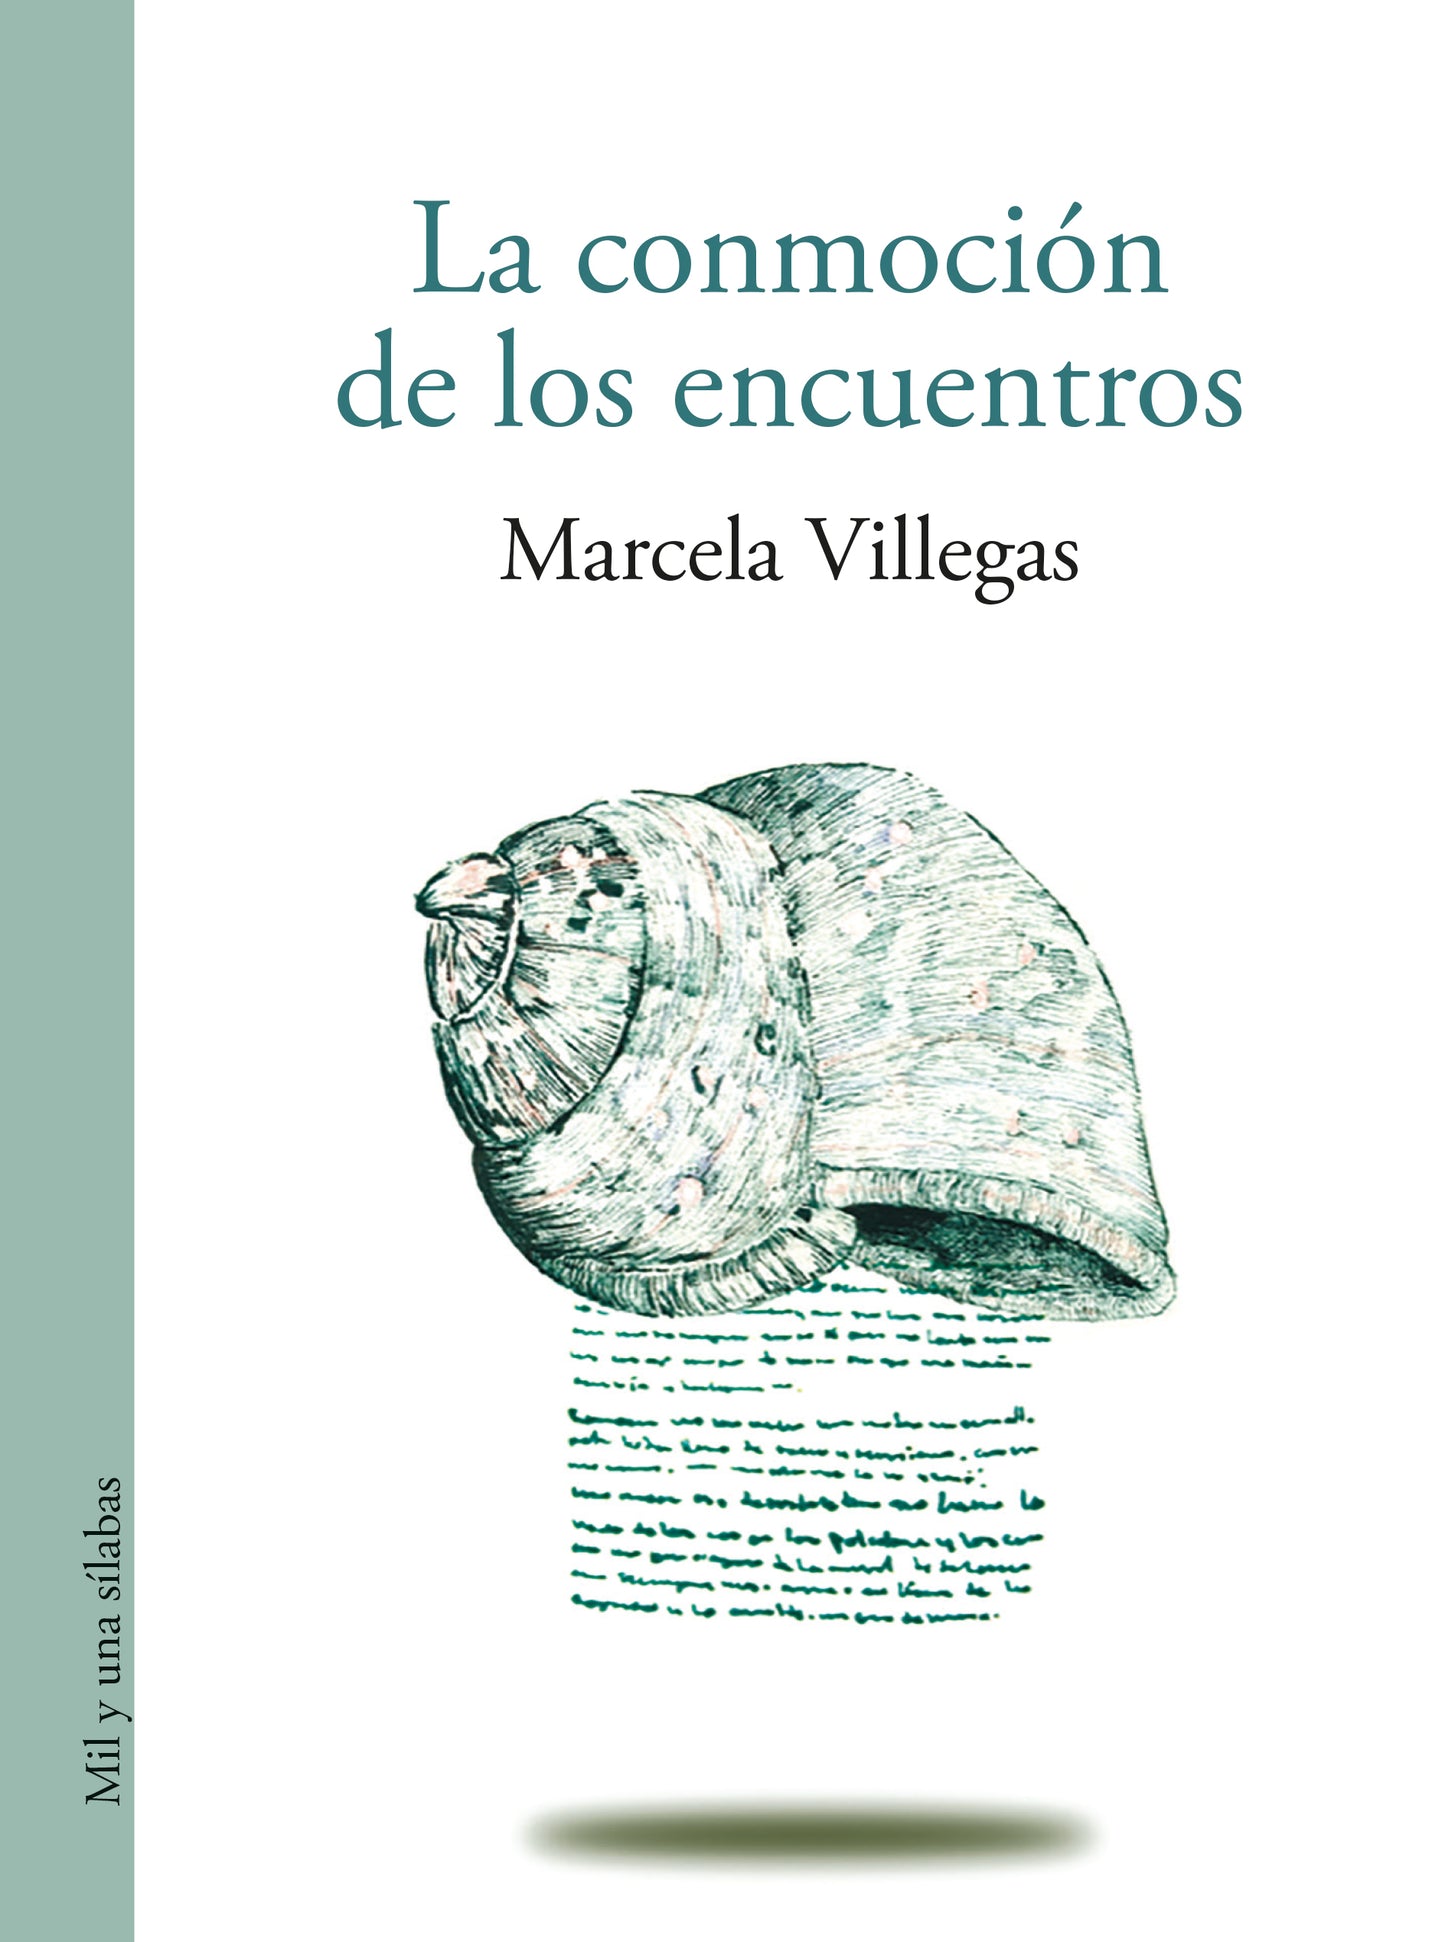 La conmoción de los encuentros - Marcela Villegas